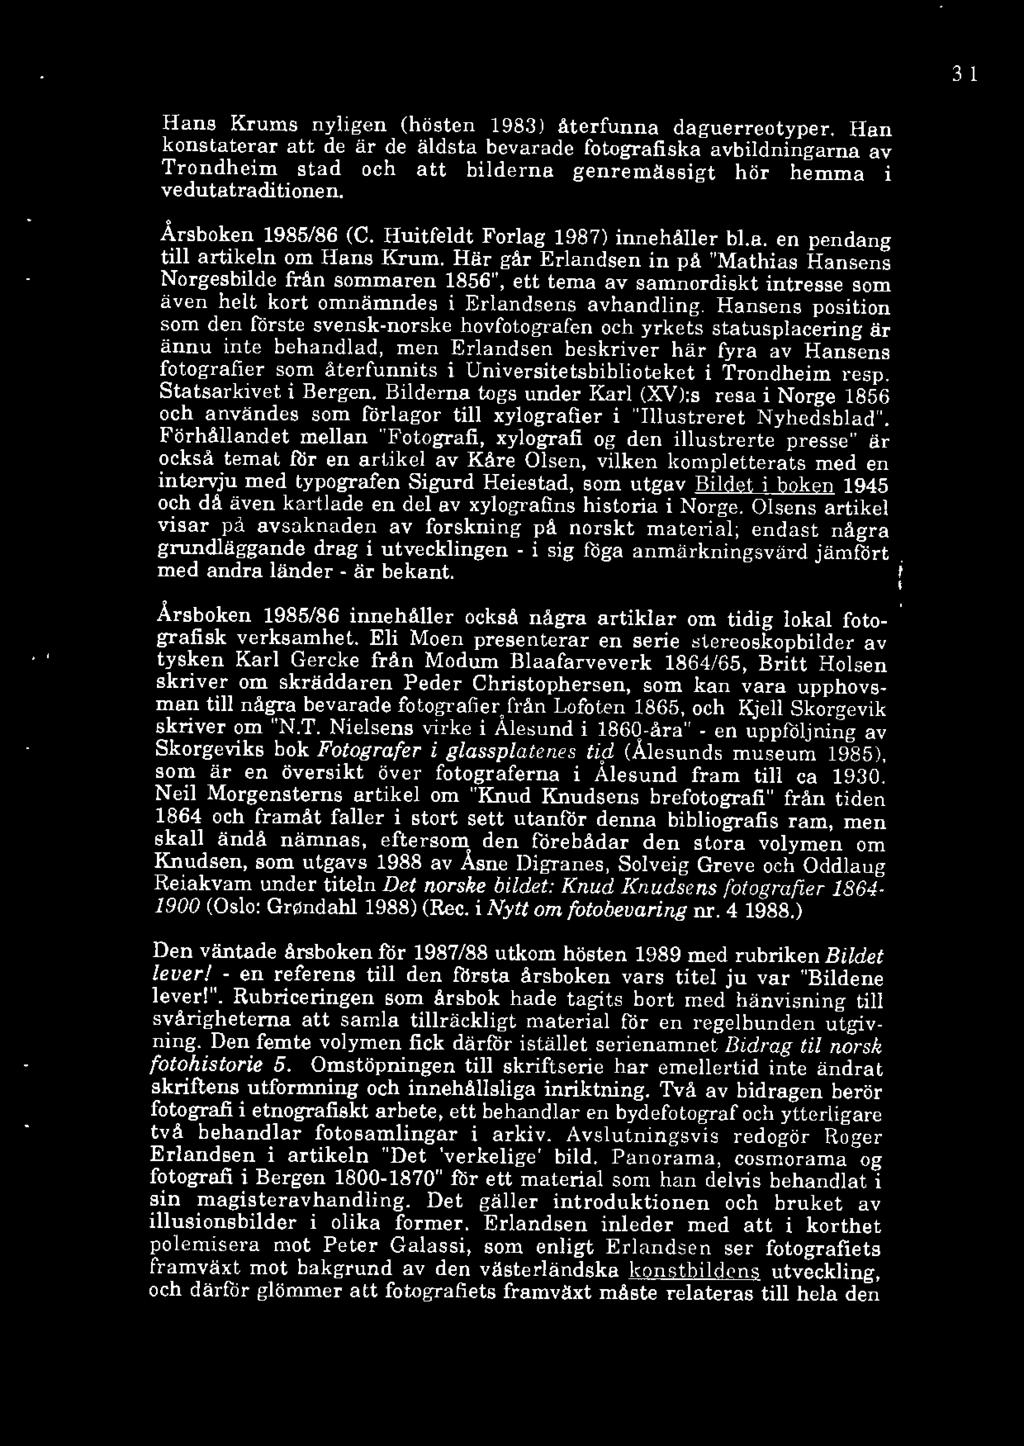 Huitfeldt Forlag 1987) innehåller bl.a. en pendang till artikeln om Hans Krum.